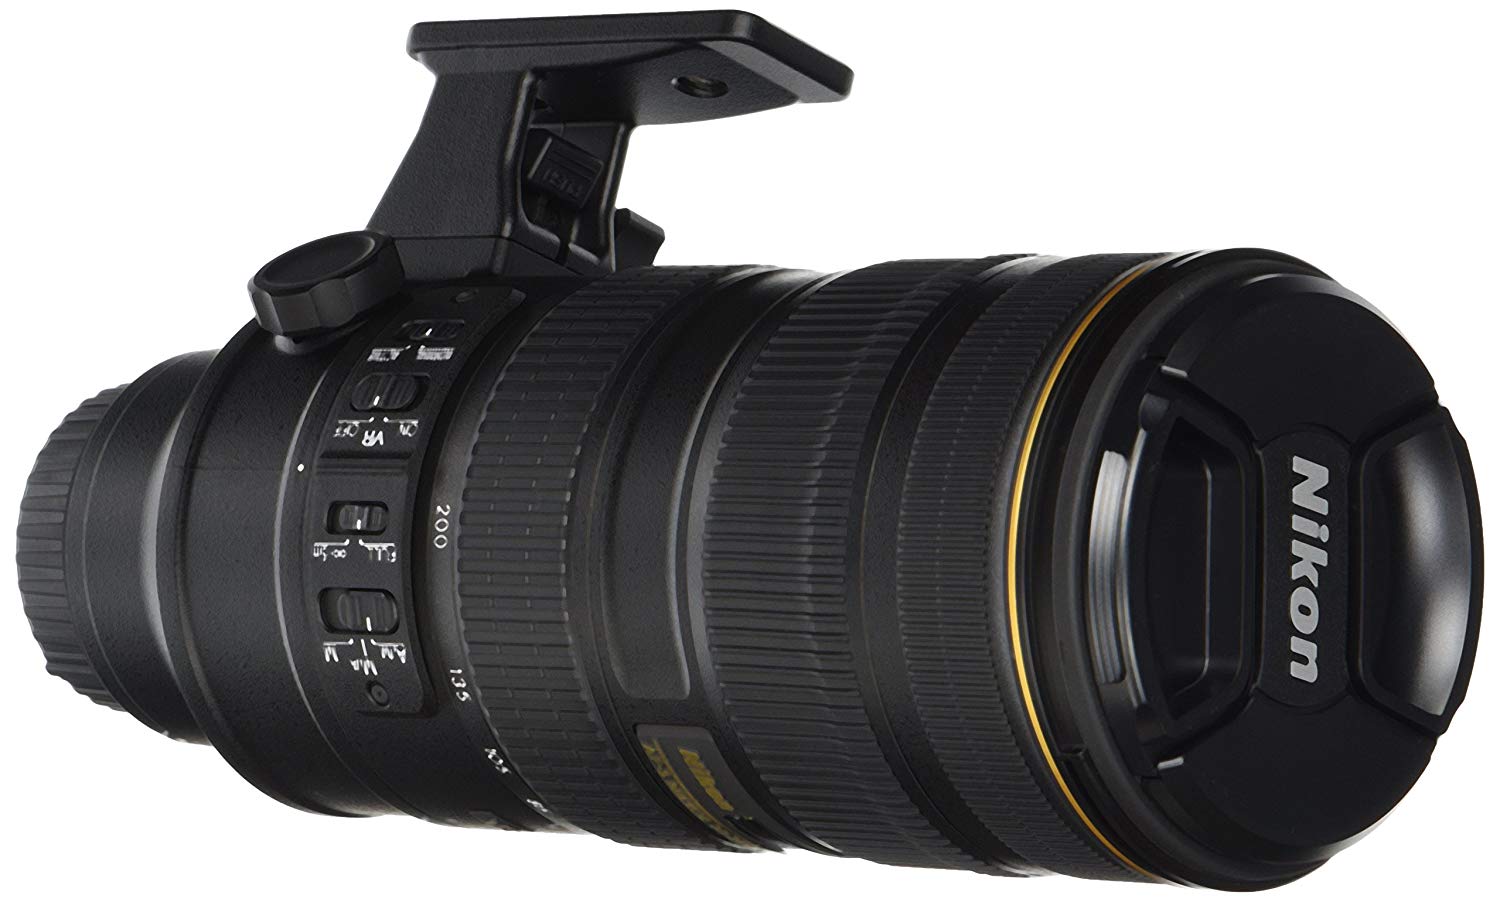 Nikon 70-200mm f/2.8G ED VR II AF-S Nikkor Zoom Lens For Digital SLR Cameras